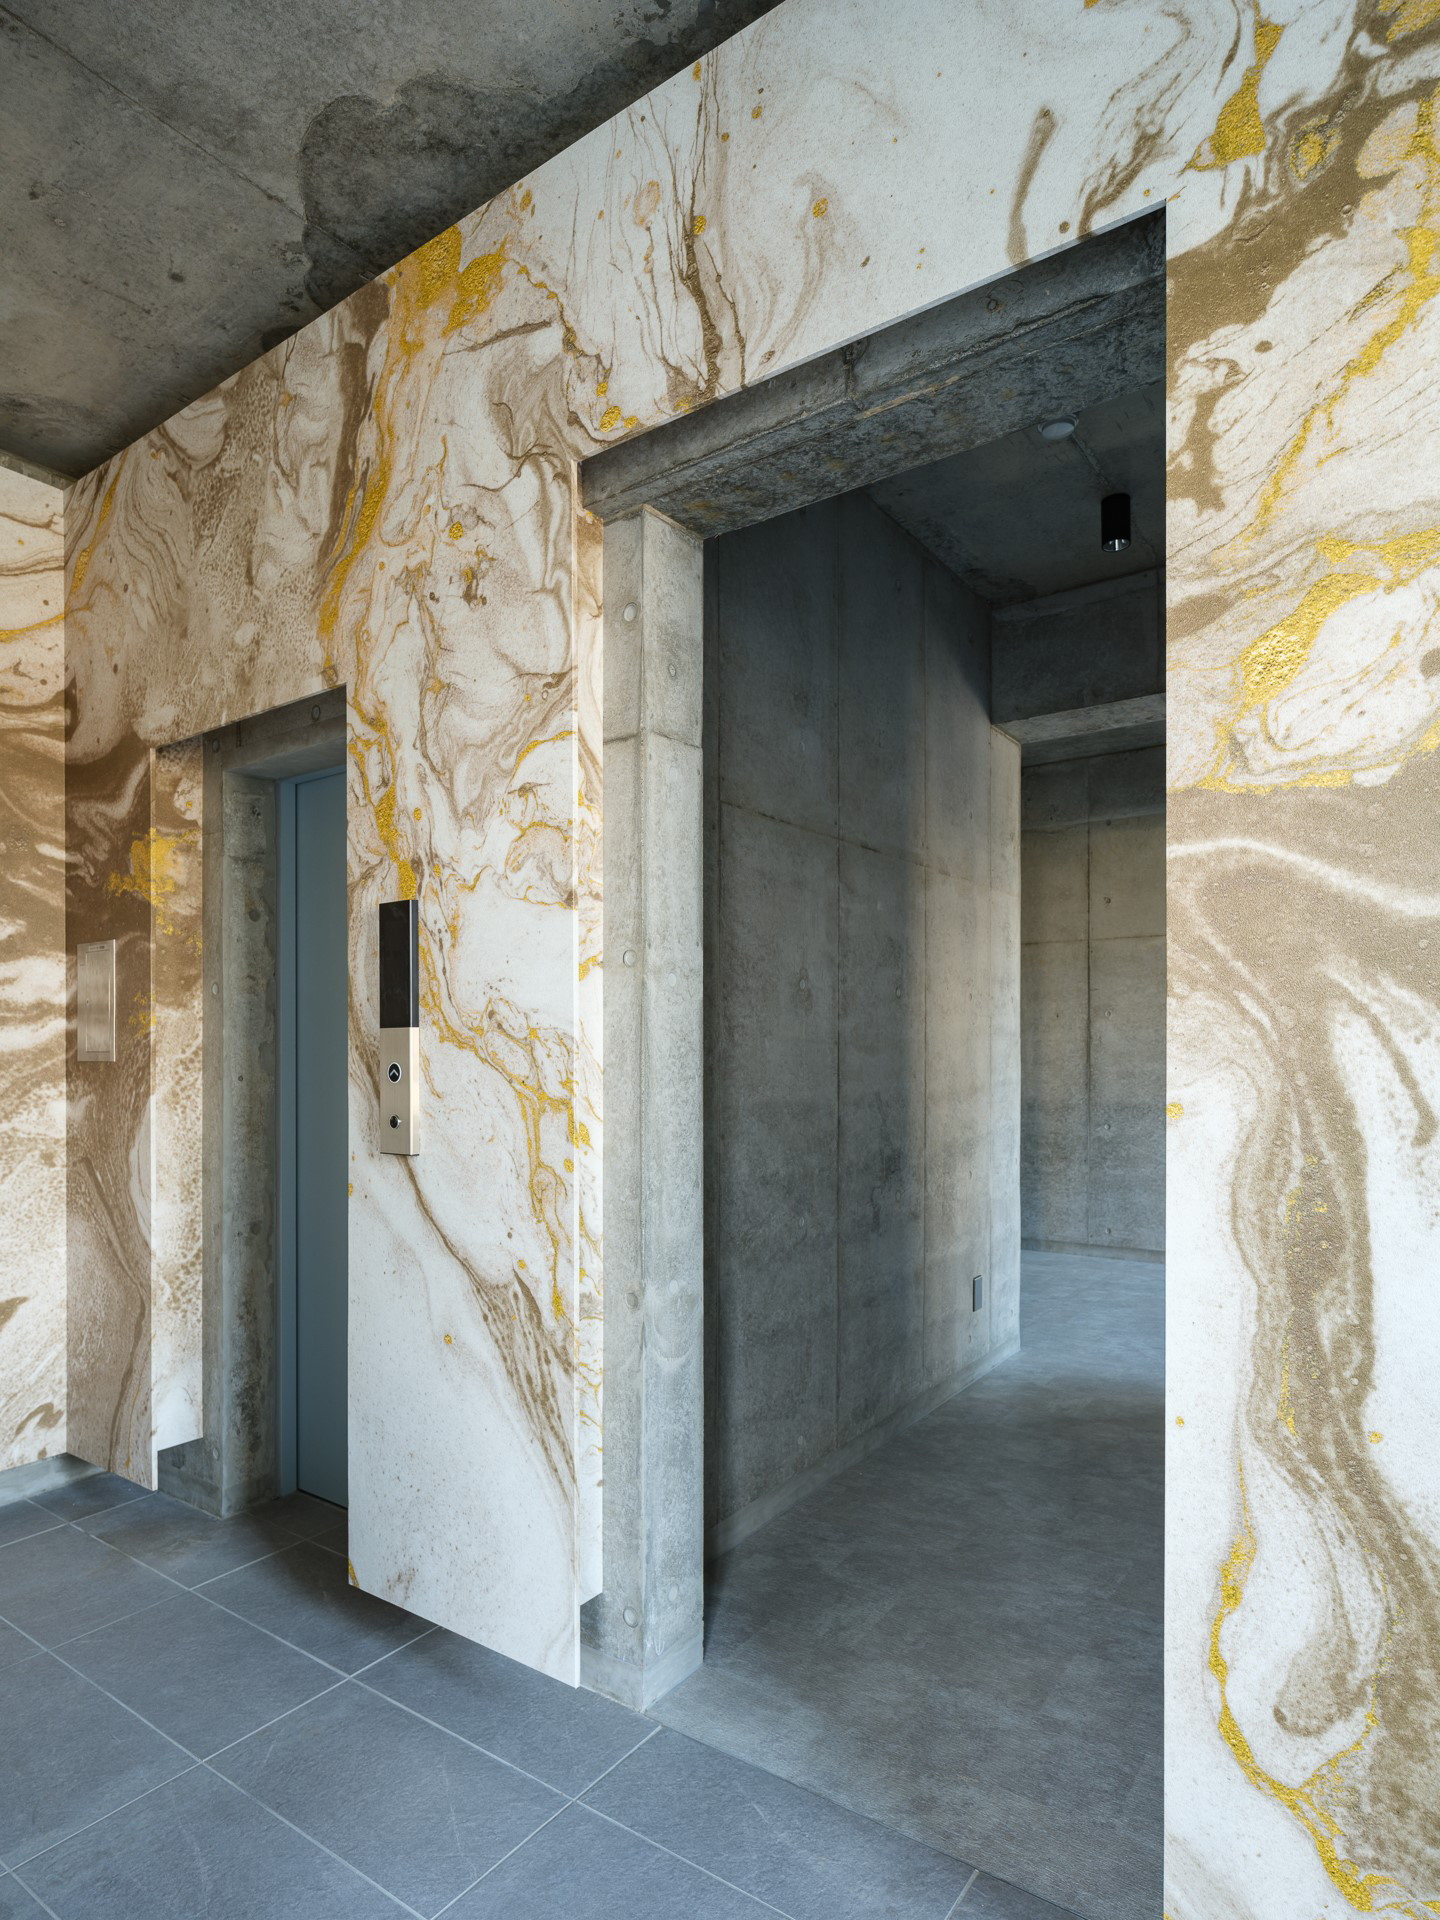 鹿児島県霧島市の集合住宅エントランスとエレベーターホール壁面へ、大理石を感じさせるようなマーブル調のlookシリーズの「Surreal / LKSR005」を展開